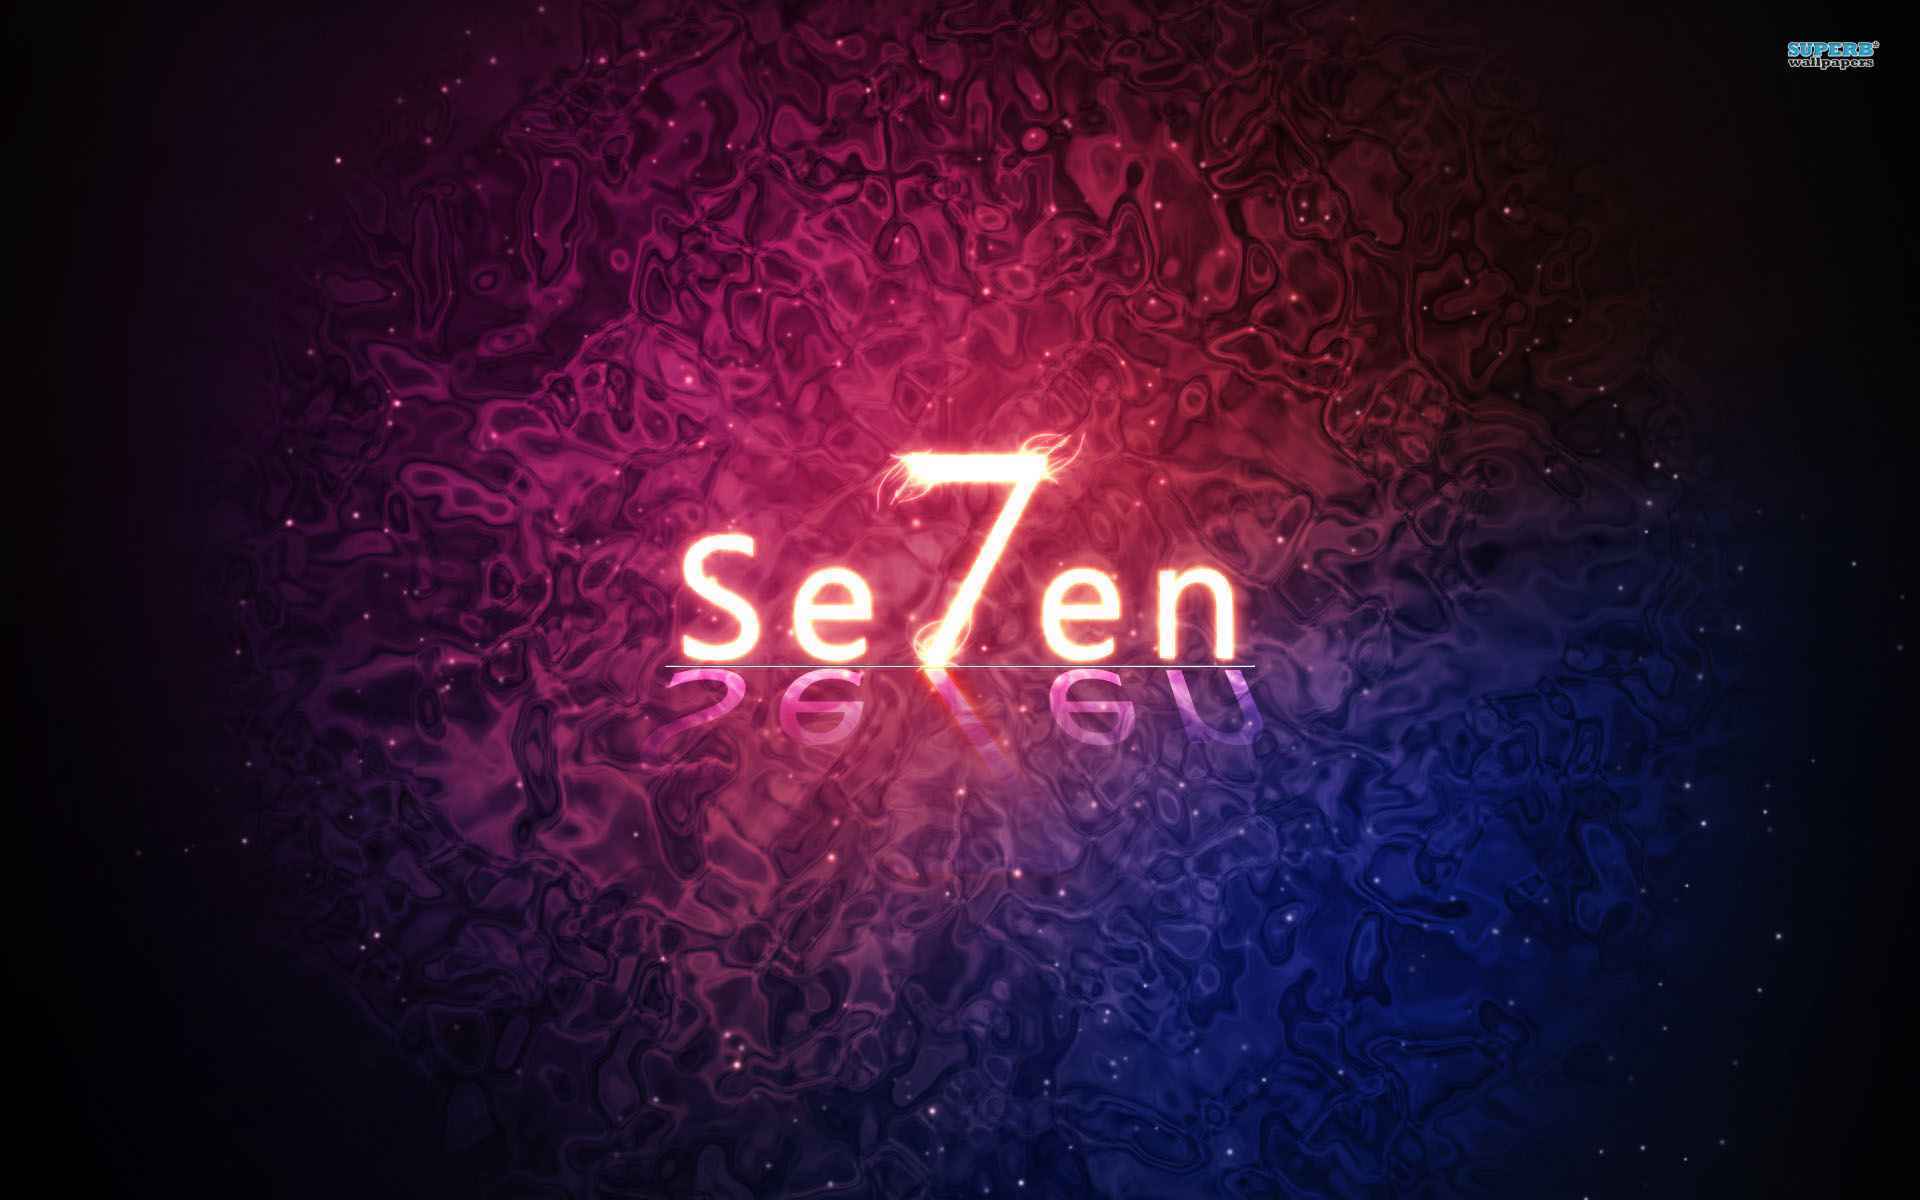 Se7en